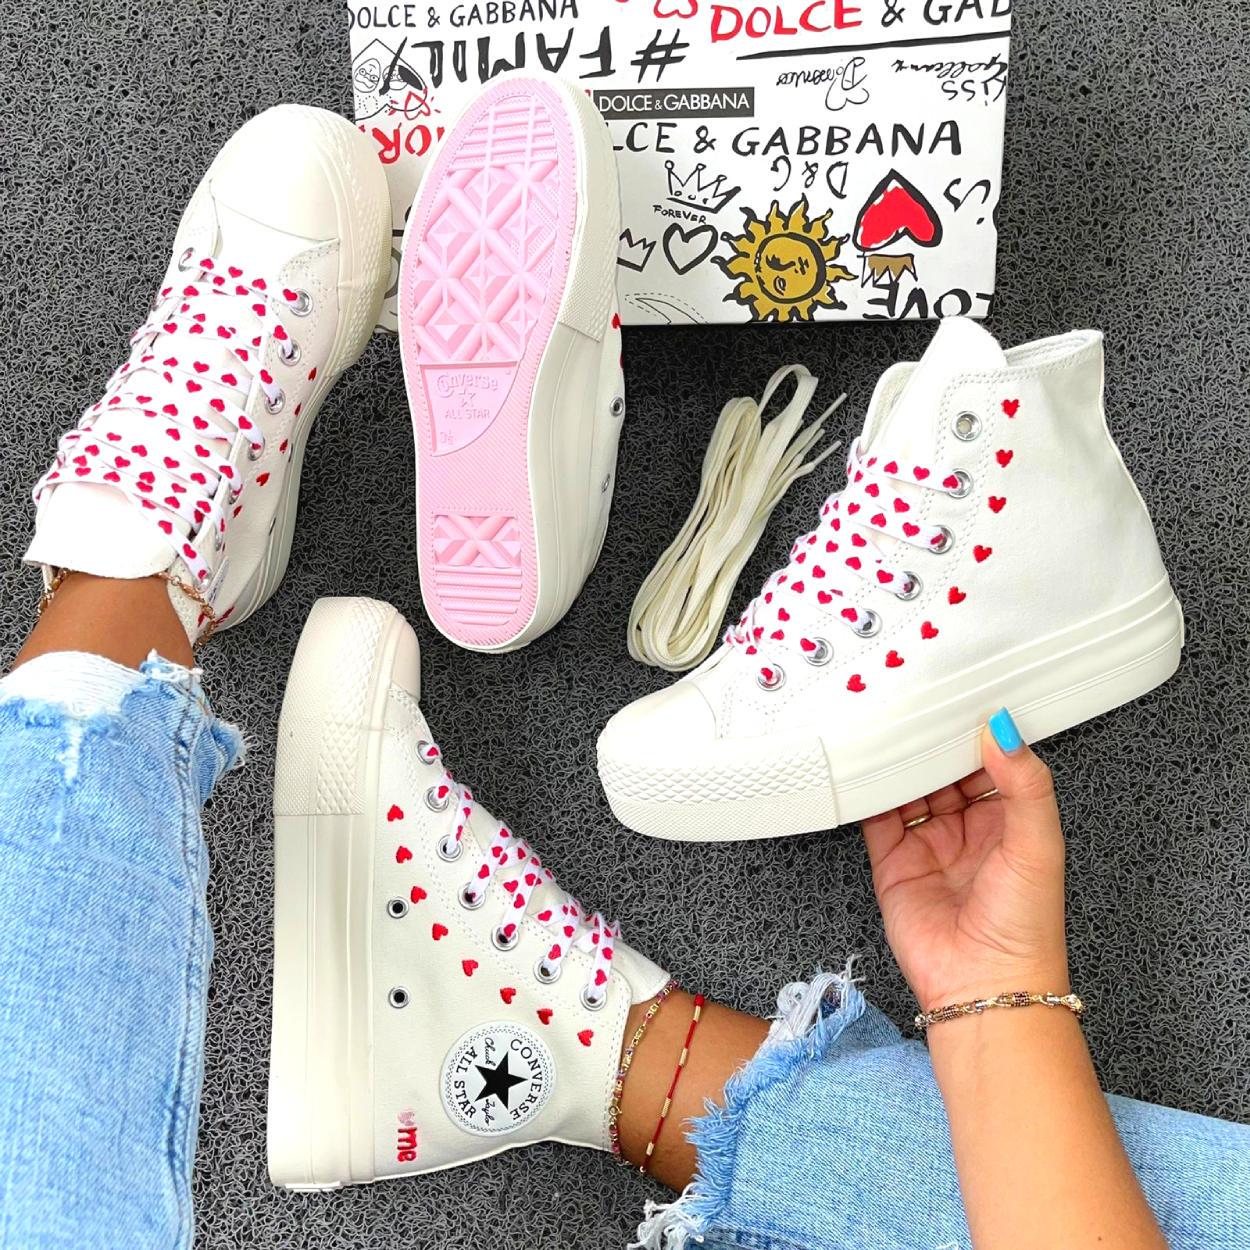 converse zapatos mujer plataforma color beige colombia tienda onlineshoppingcenterg centro de compras en linea